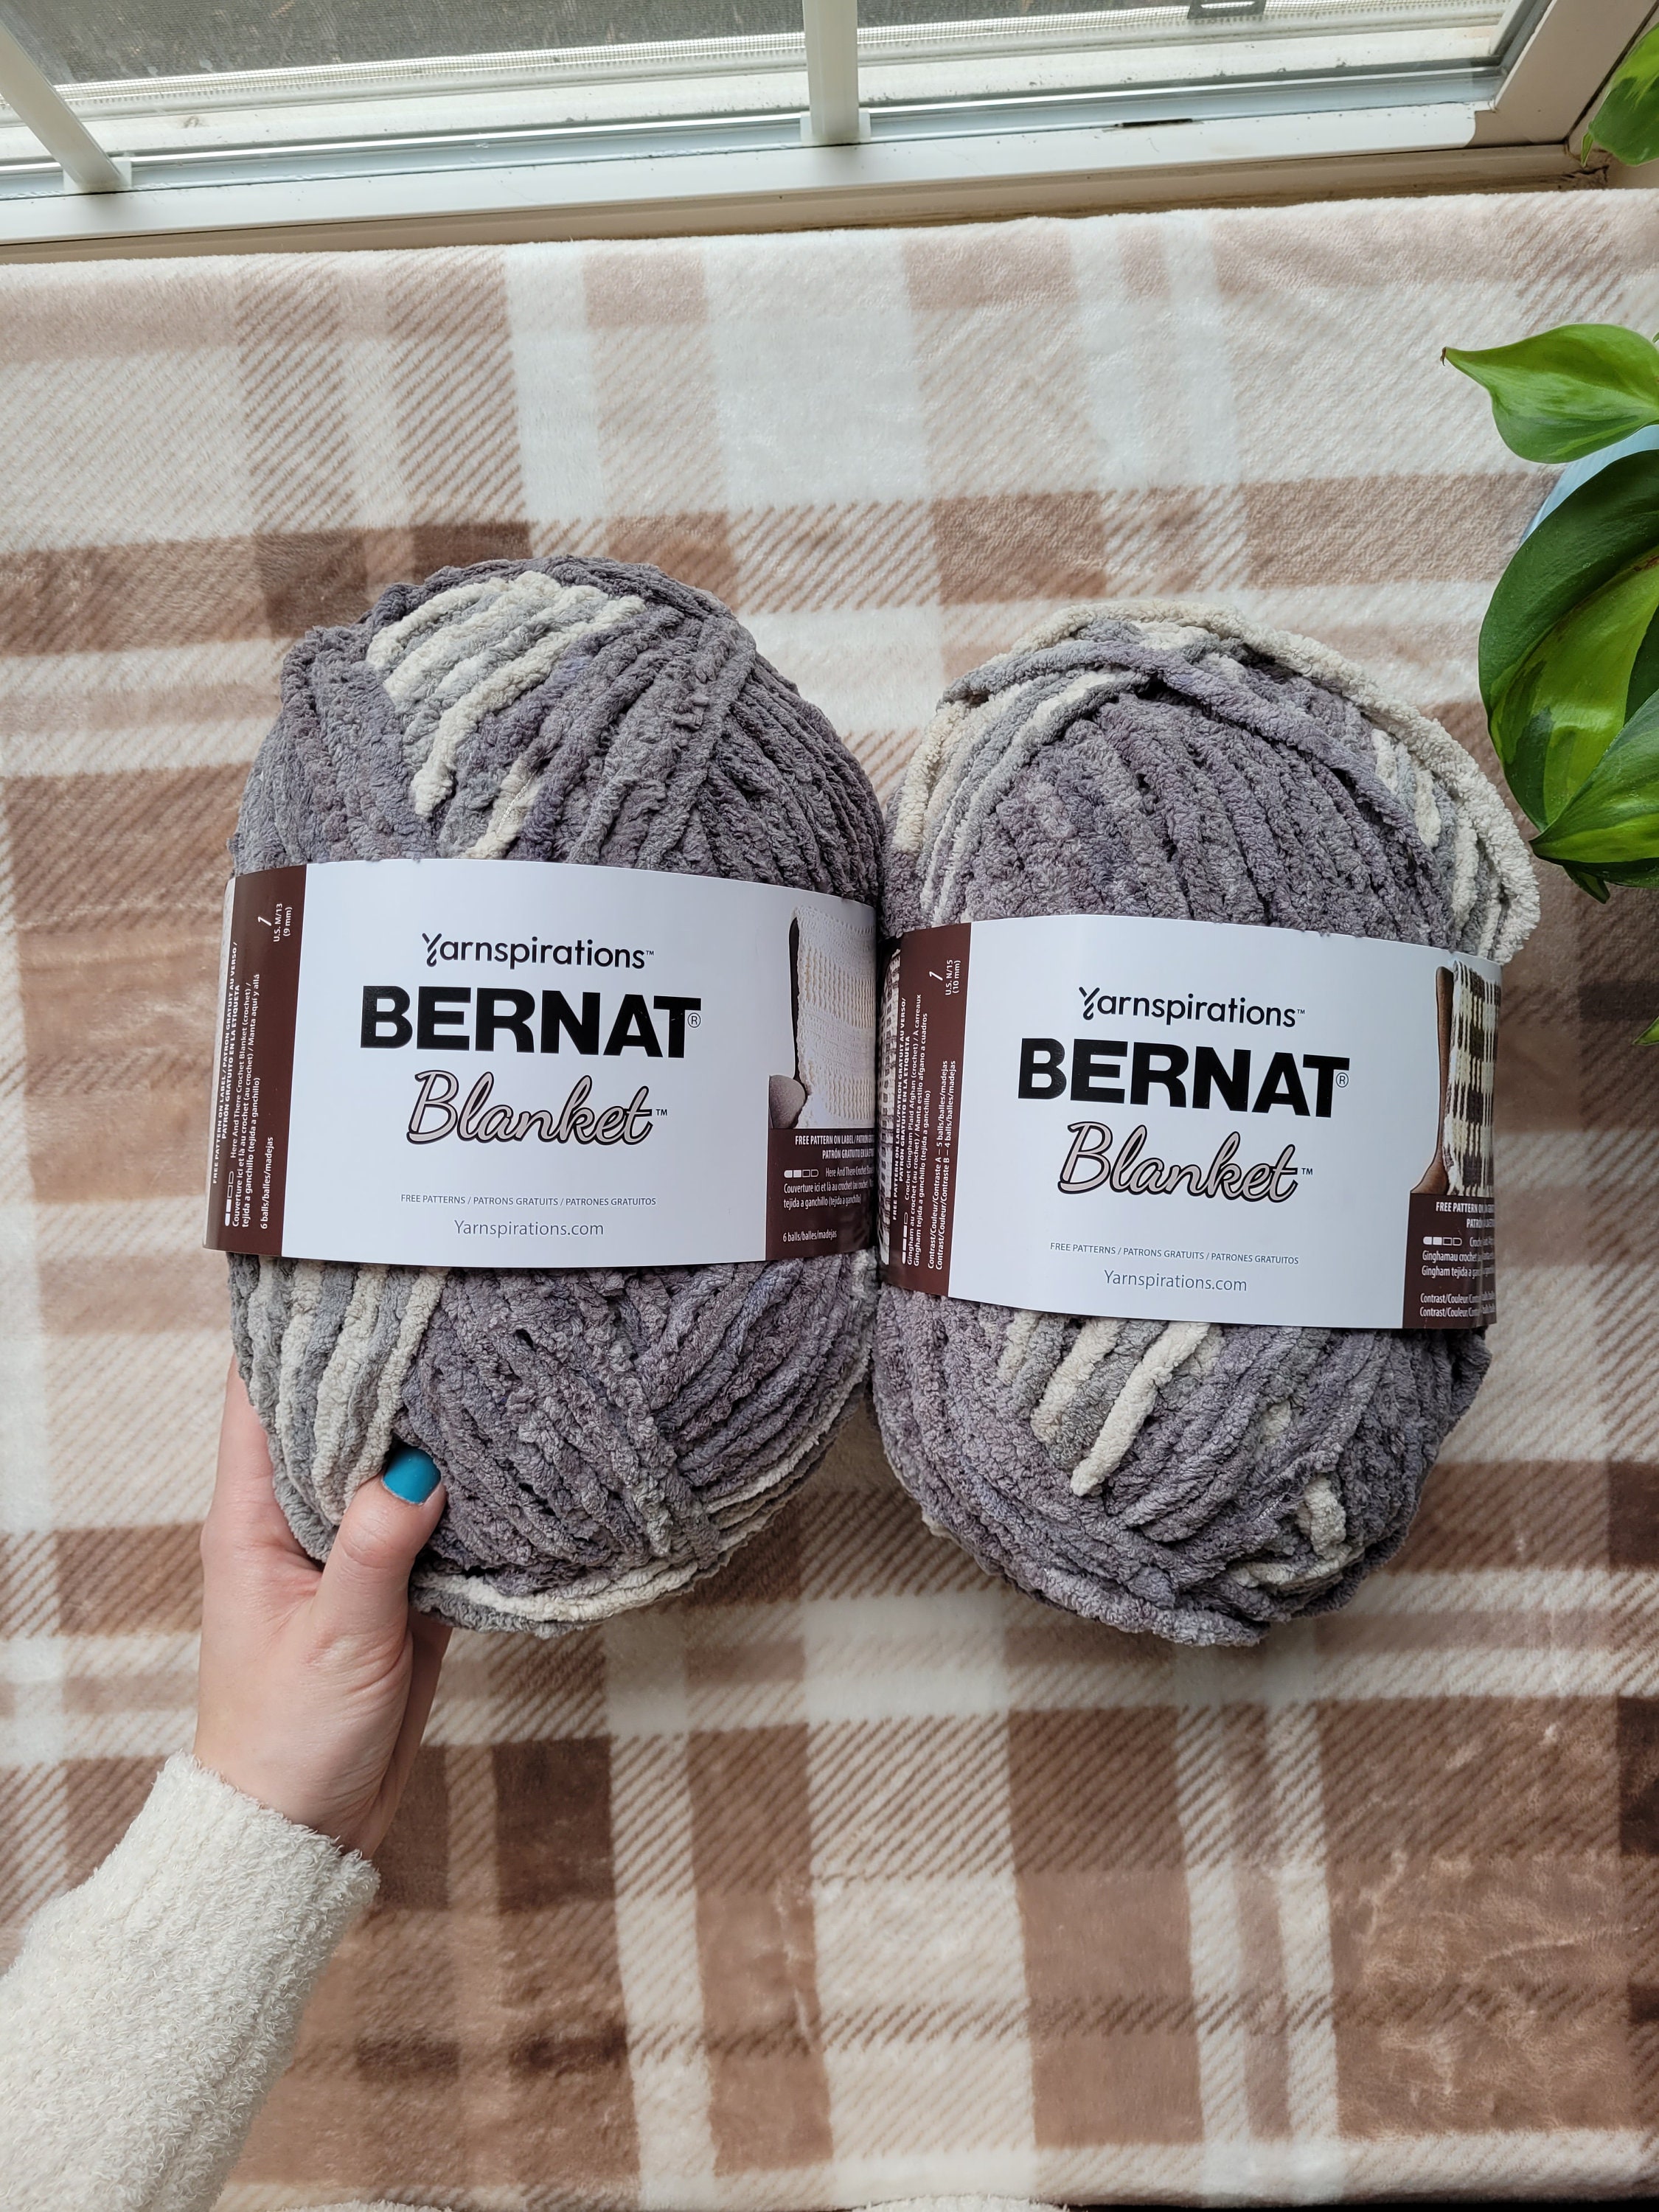 Bernat Bundle up Yarn Small 140g 